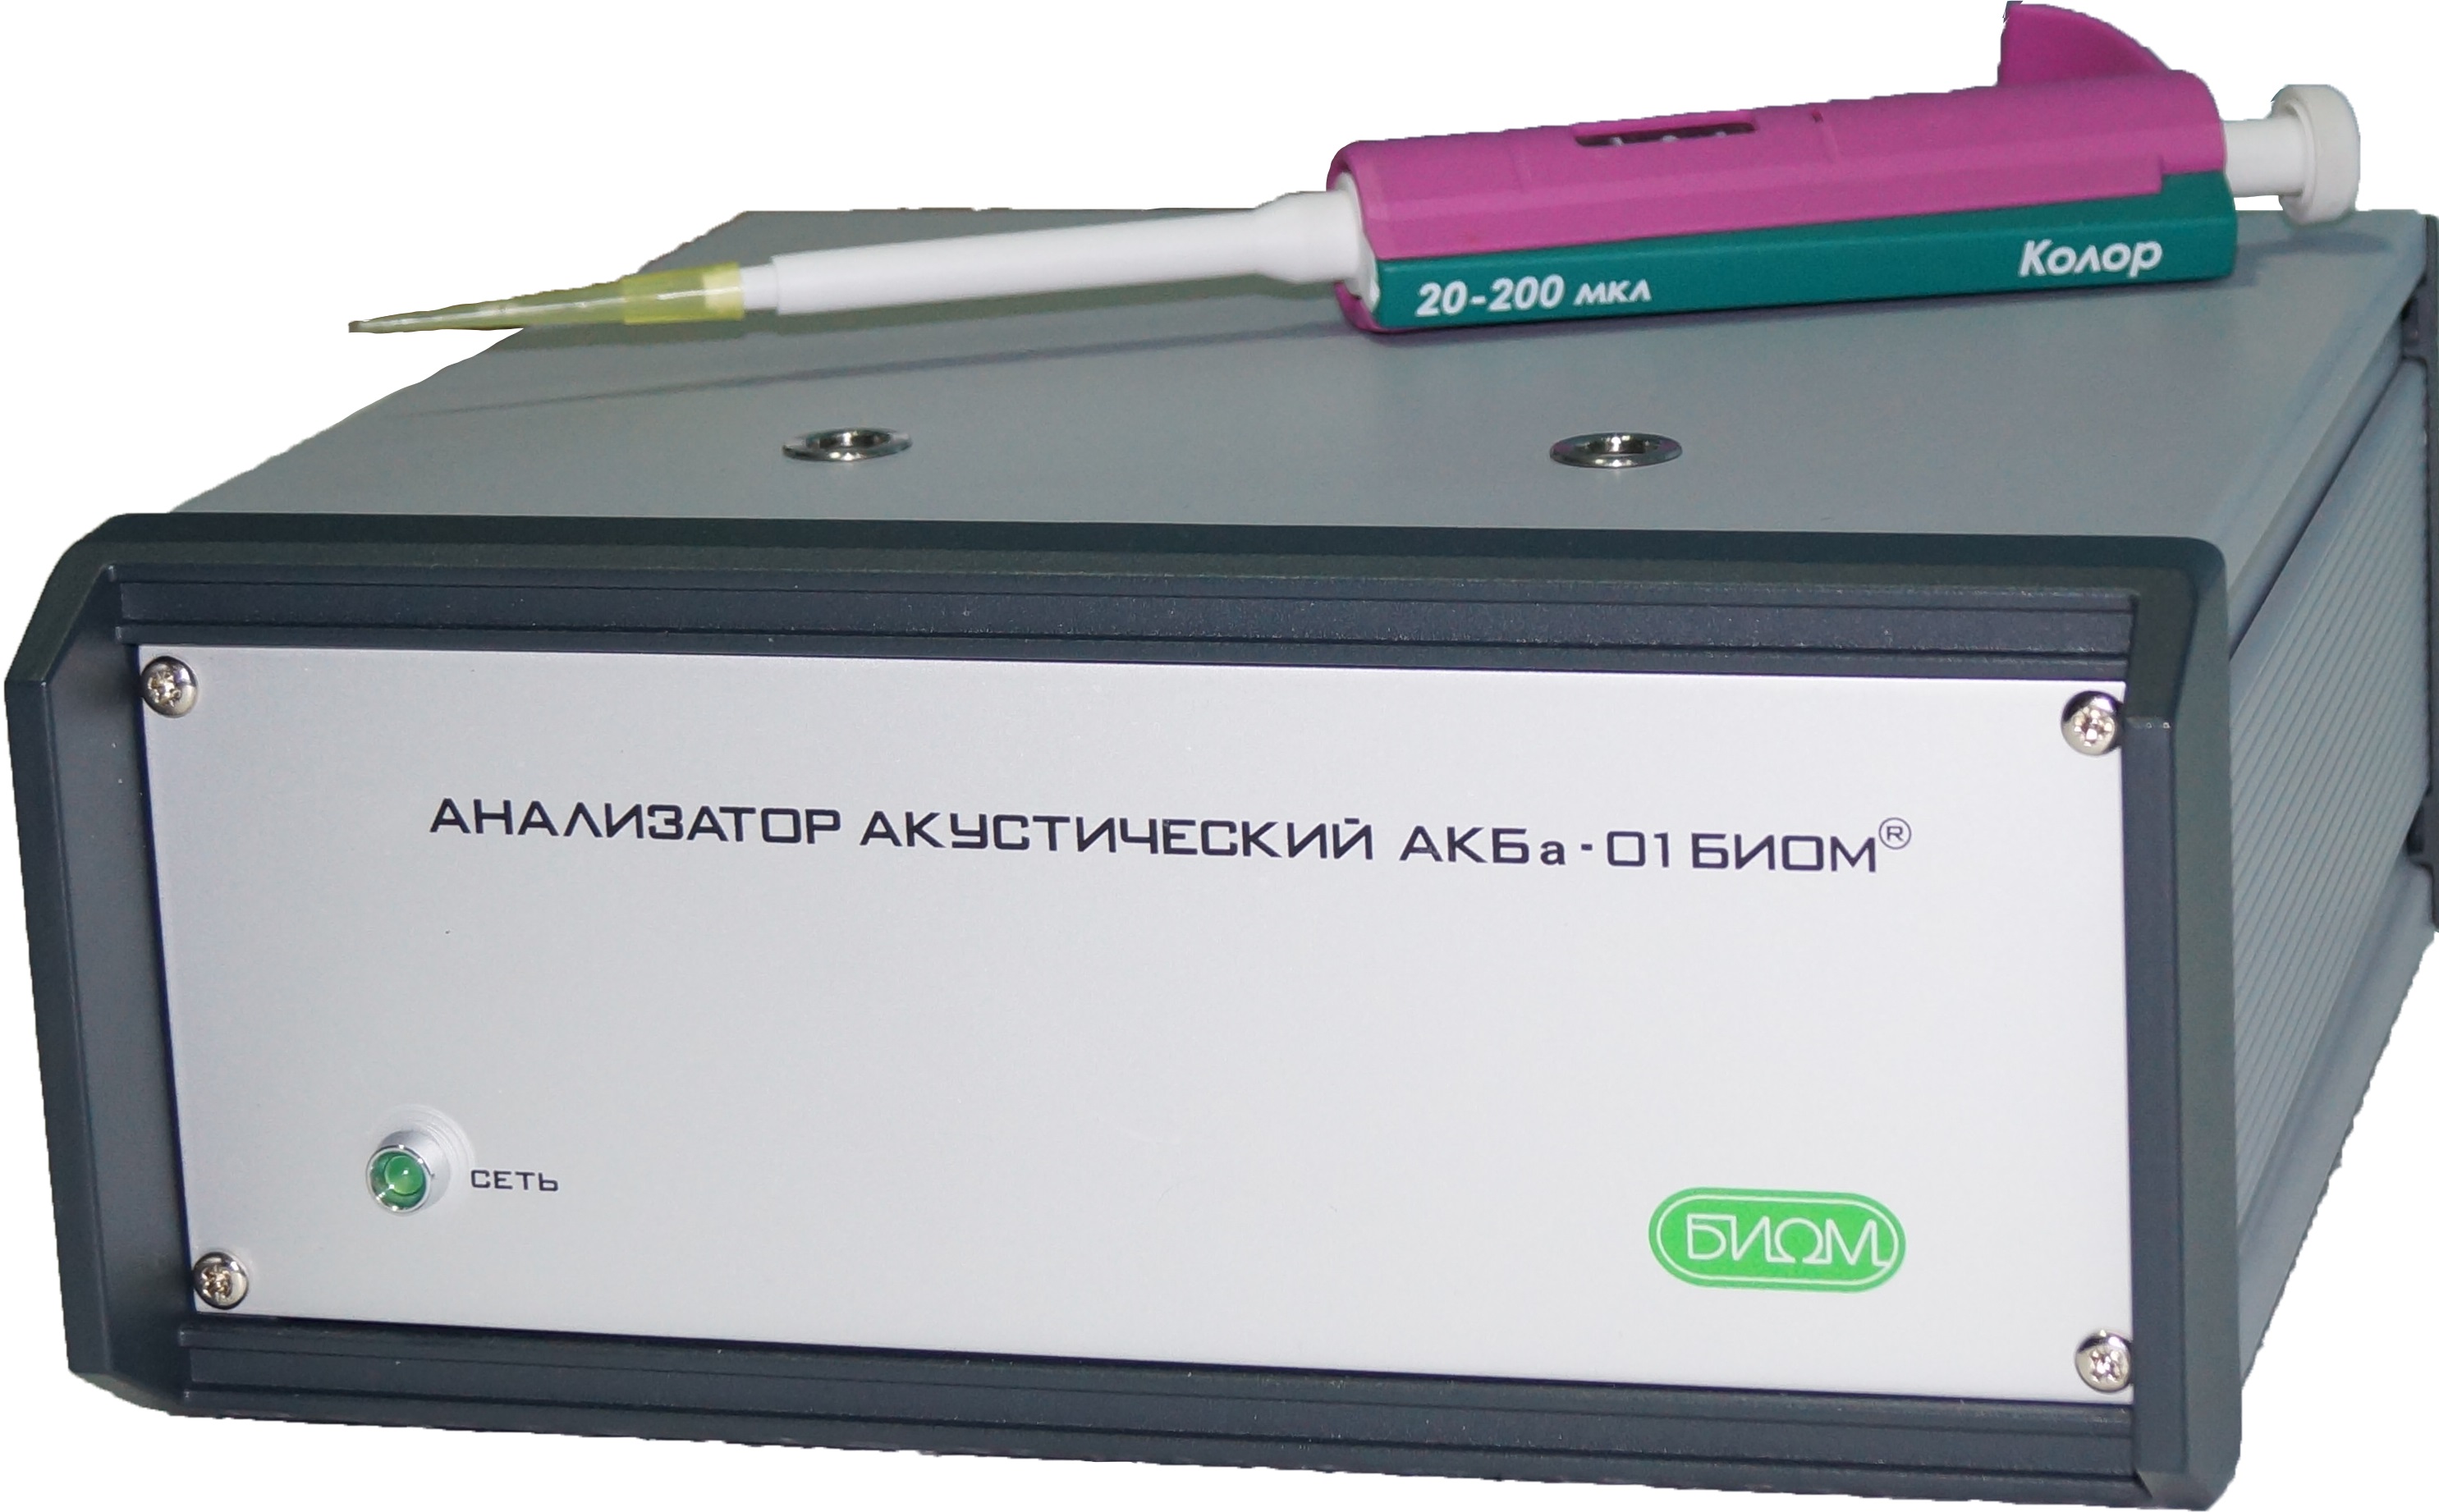 Лове анализатор. Анализатор АКБА-01. Акустический анализатор биом-01. АКБА-01- биом. Abgenix анализатор.